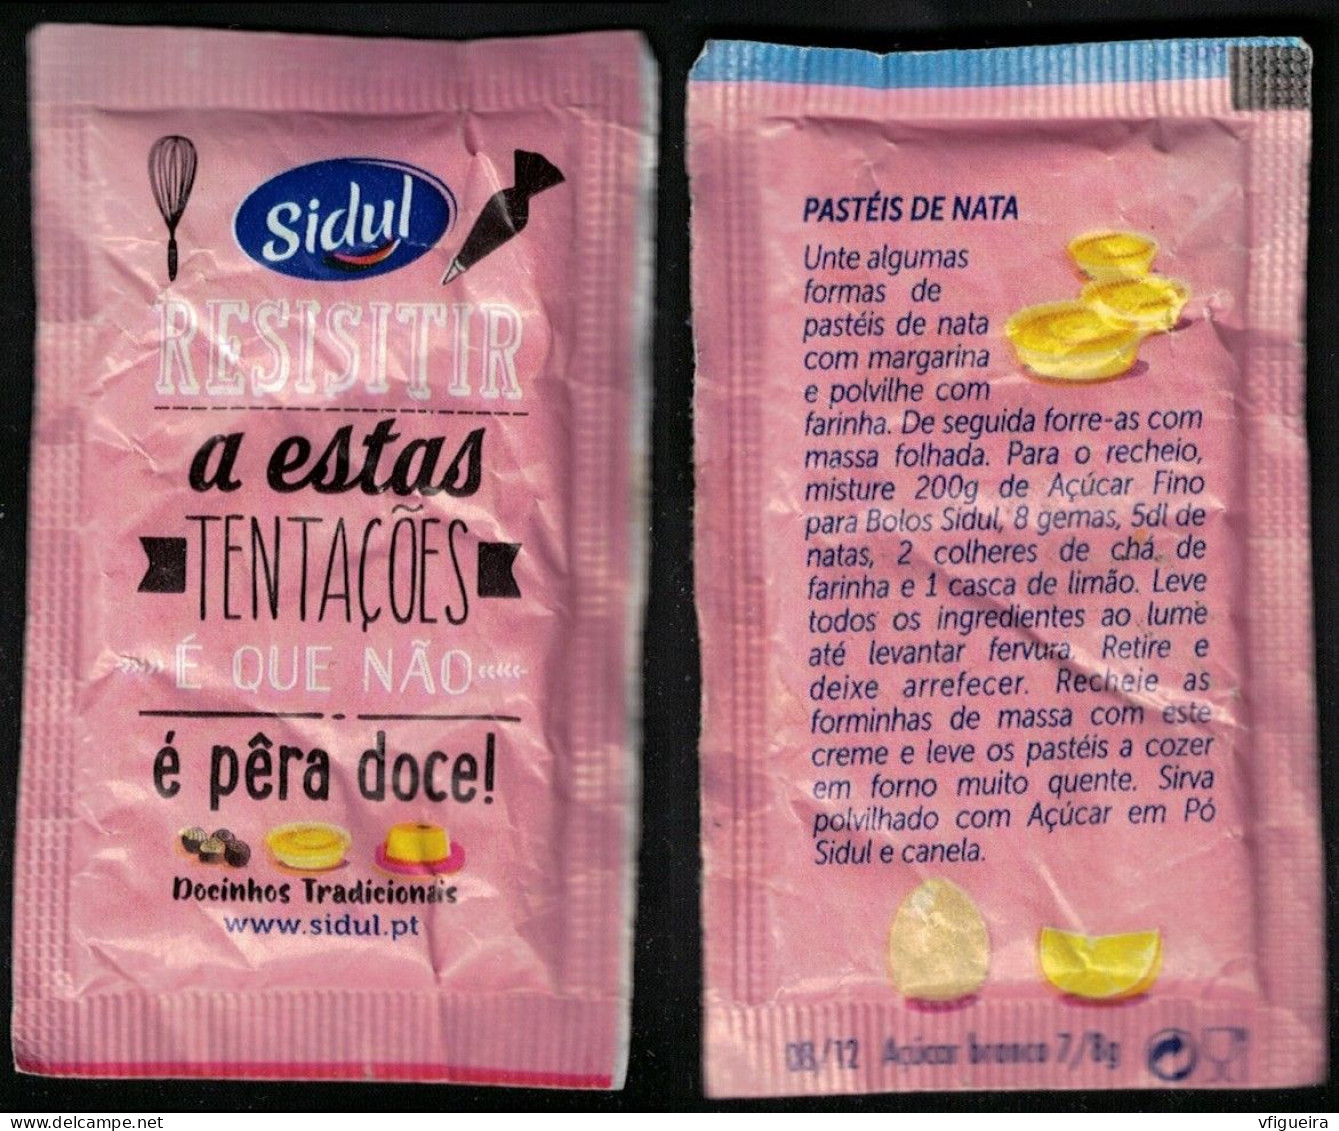 Portugal Sachet Sucre Sugar Bag Sidul Resistir A Estas Tentações é Que Não é Pêra Doce Pastéis De Nata - Sugars